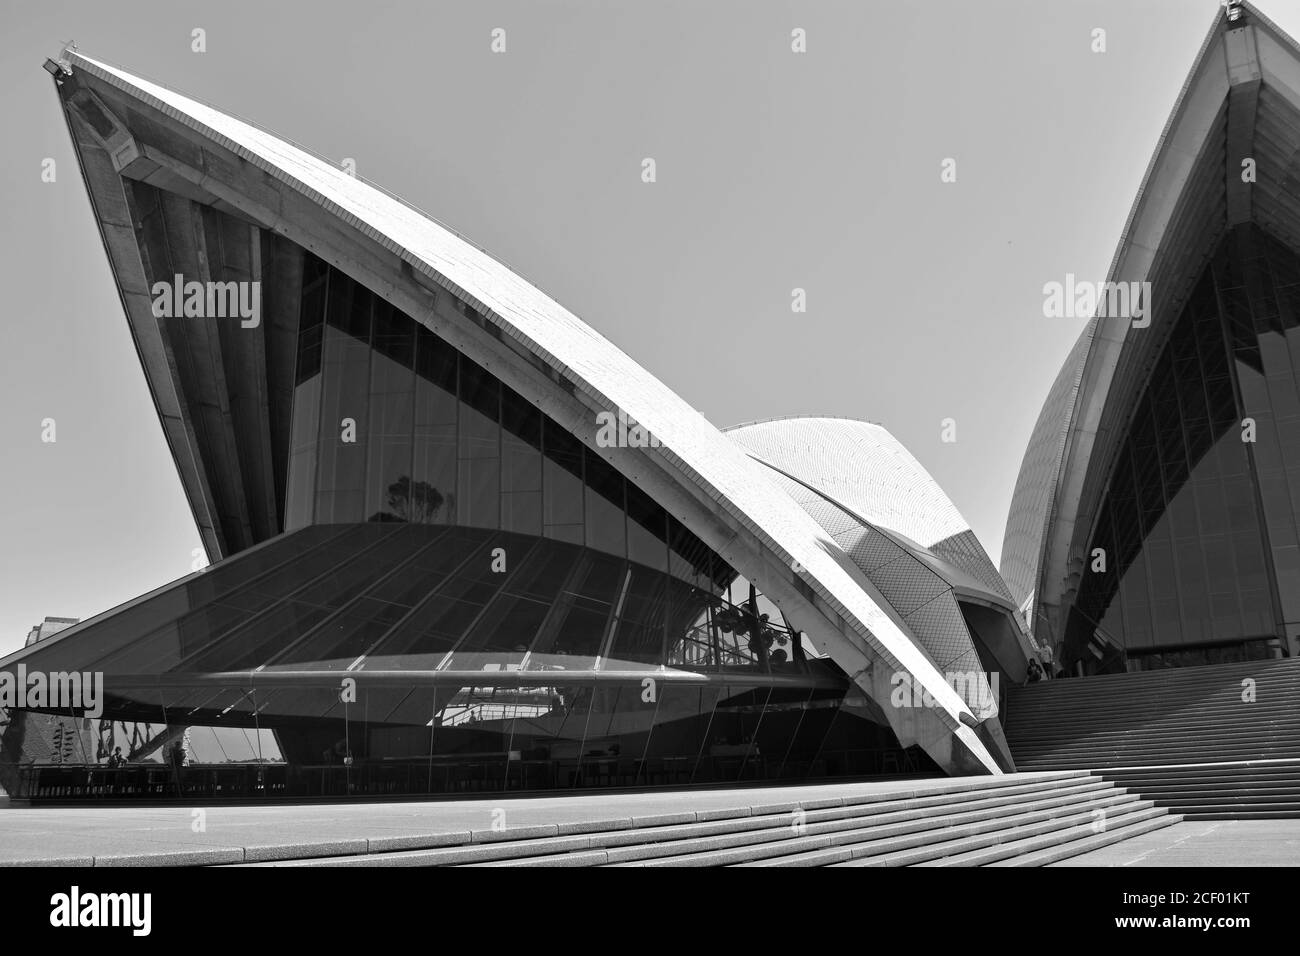 Un'immagine astratta in bianco e nero della Sydney Opera House. Gli angoli drammatici della vela come la linea del tetto si innalzano contro un cielo limpido. Australia Foto Stock